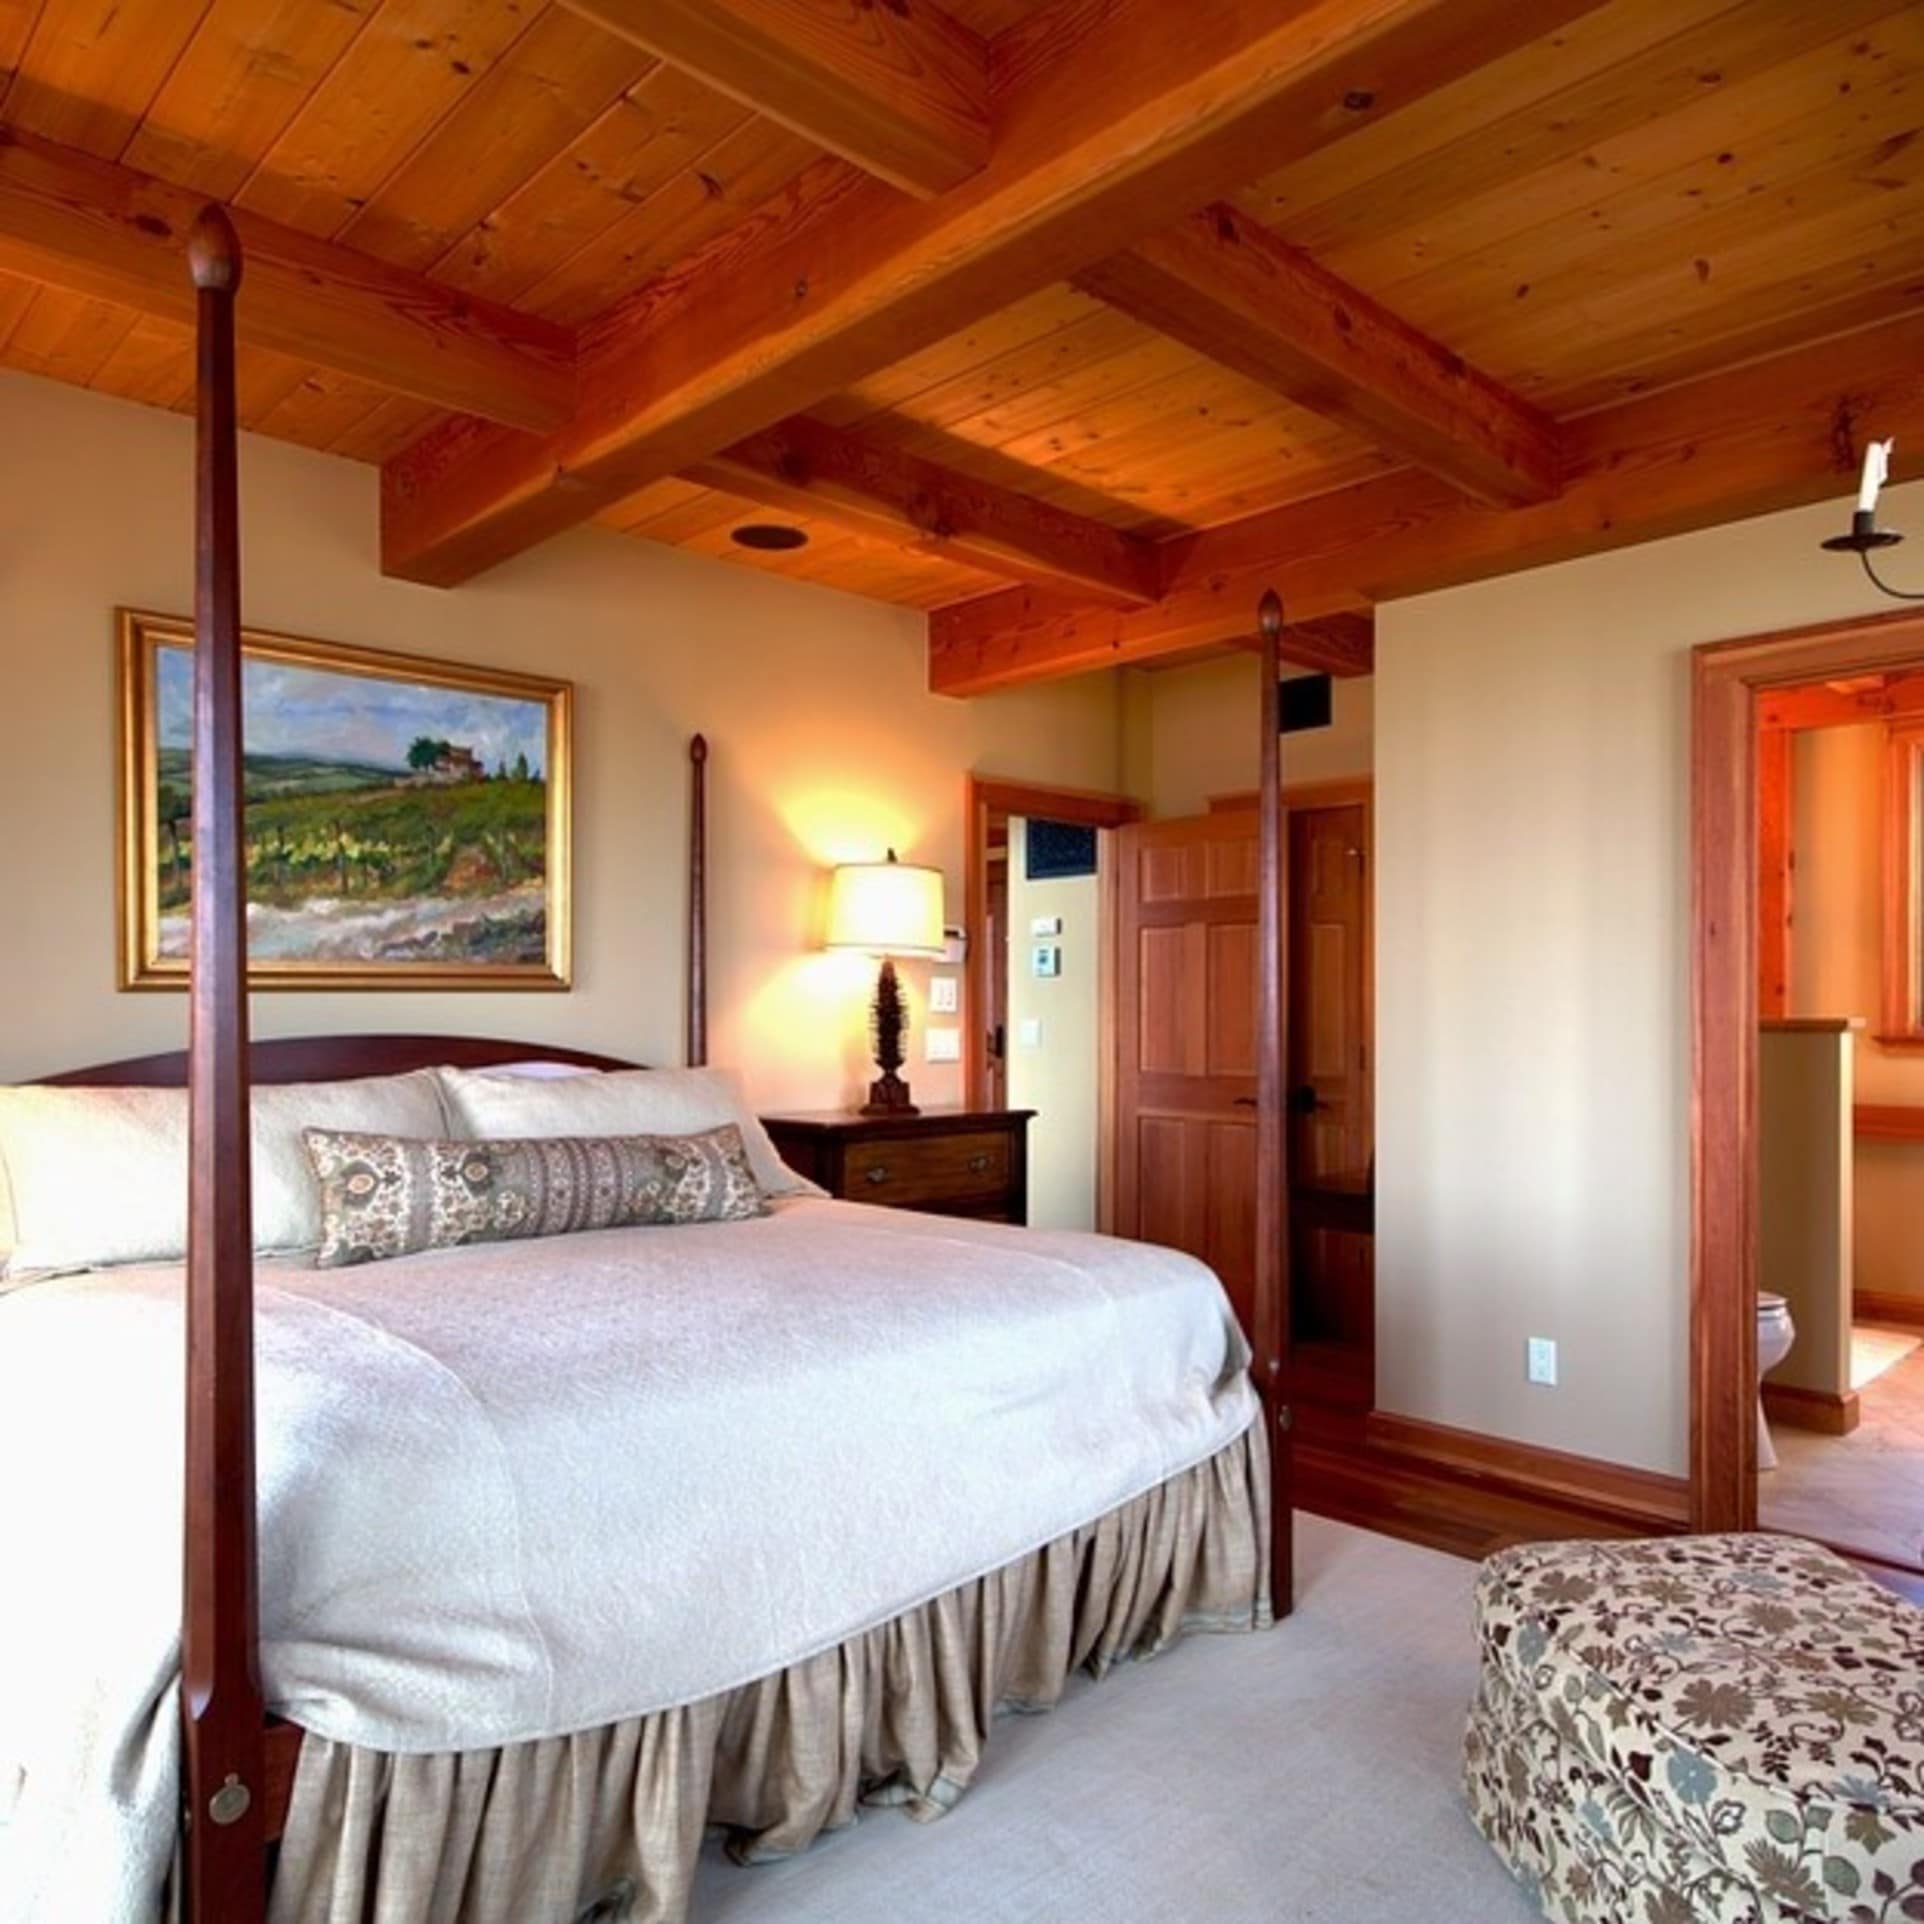 Dunkles und helles Holz verleihen diesem Schlafzimmer einen ländlichen und doch edlen Charme